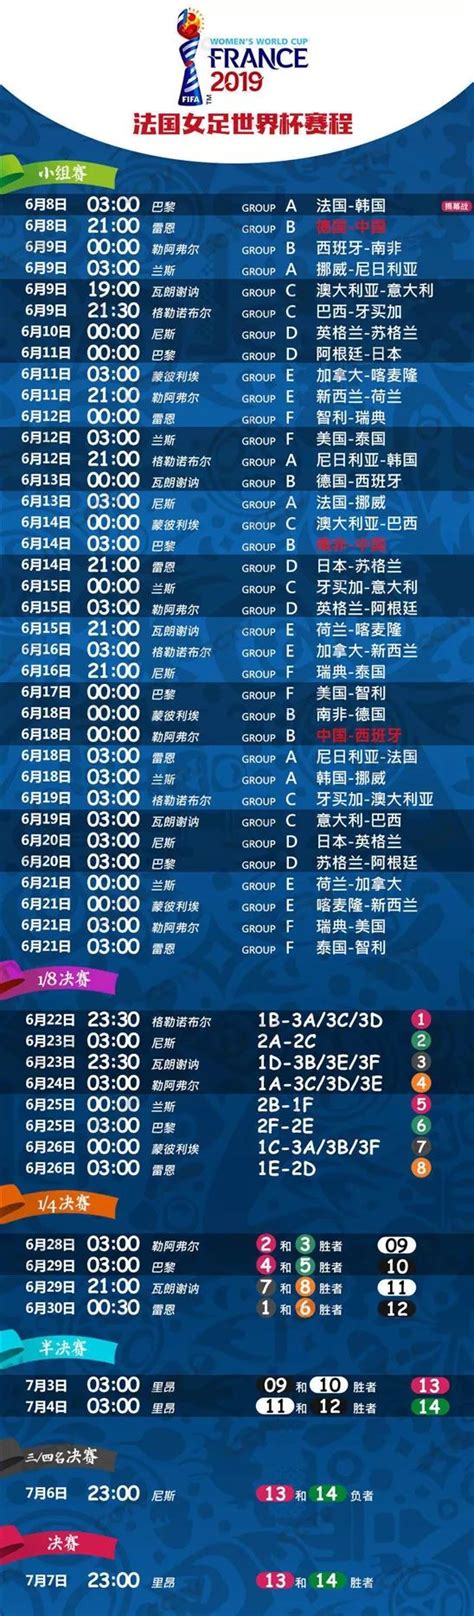 世界杯2018赛程表 下载_2018世界杯中国队赛程表 - 随意云